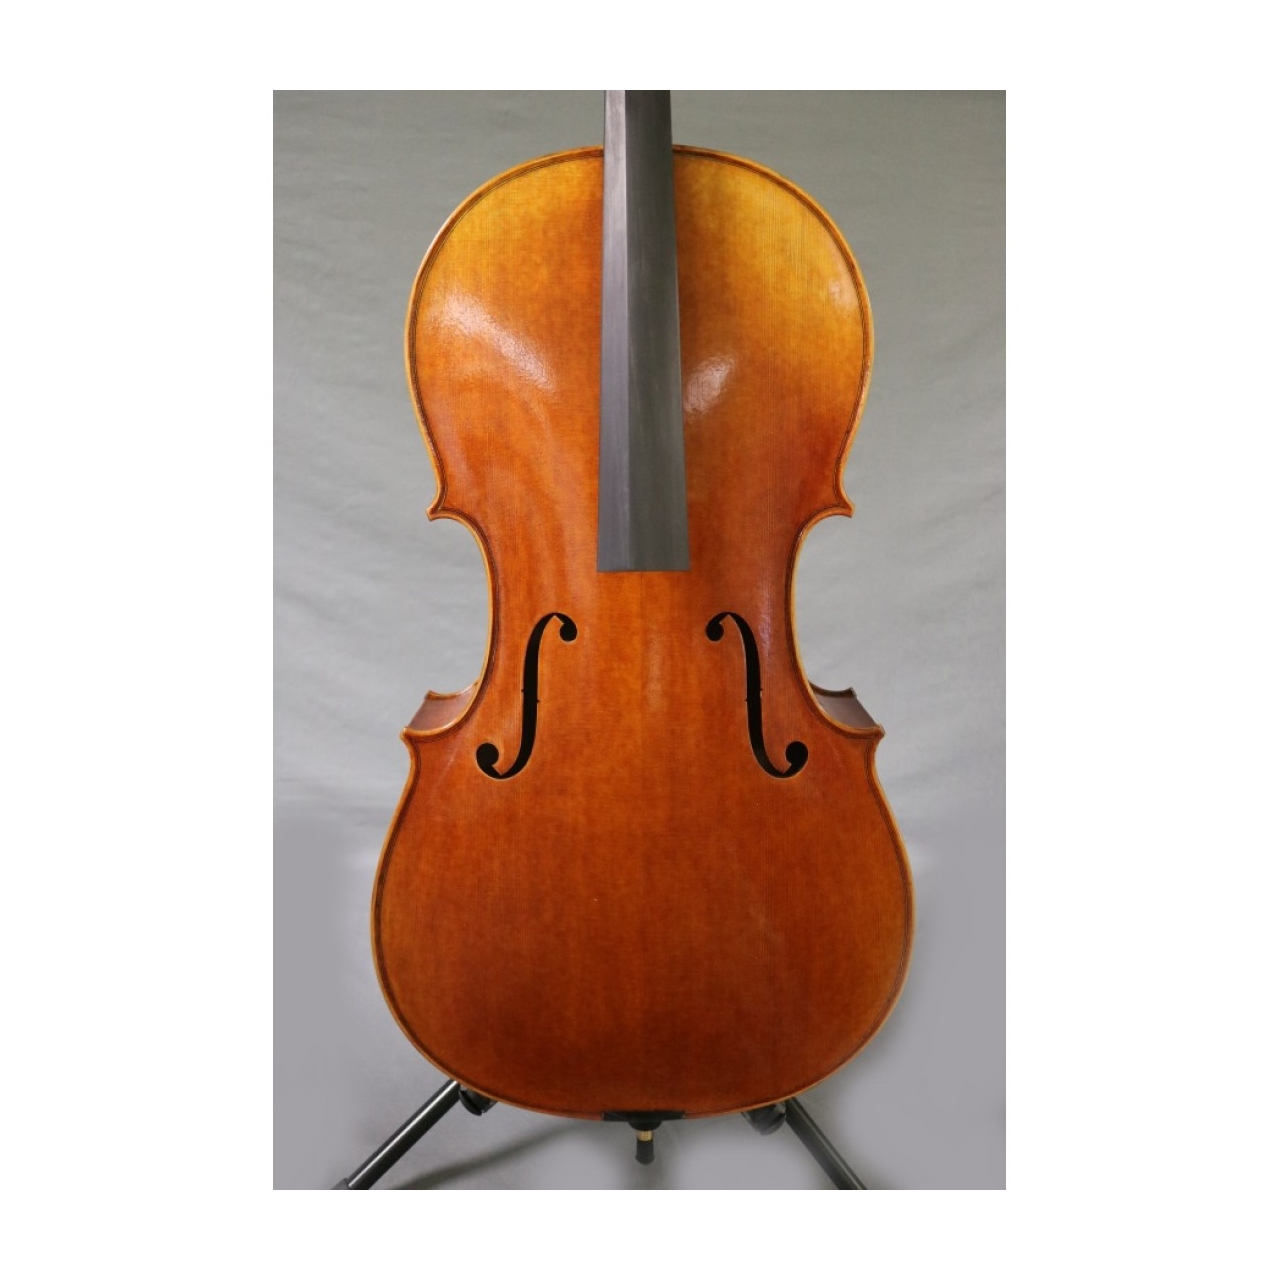 SE Cello 4/4 Fabrication artisanal A